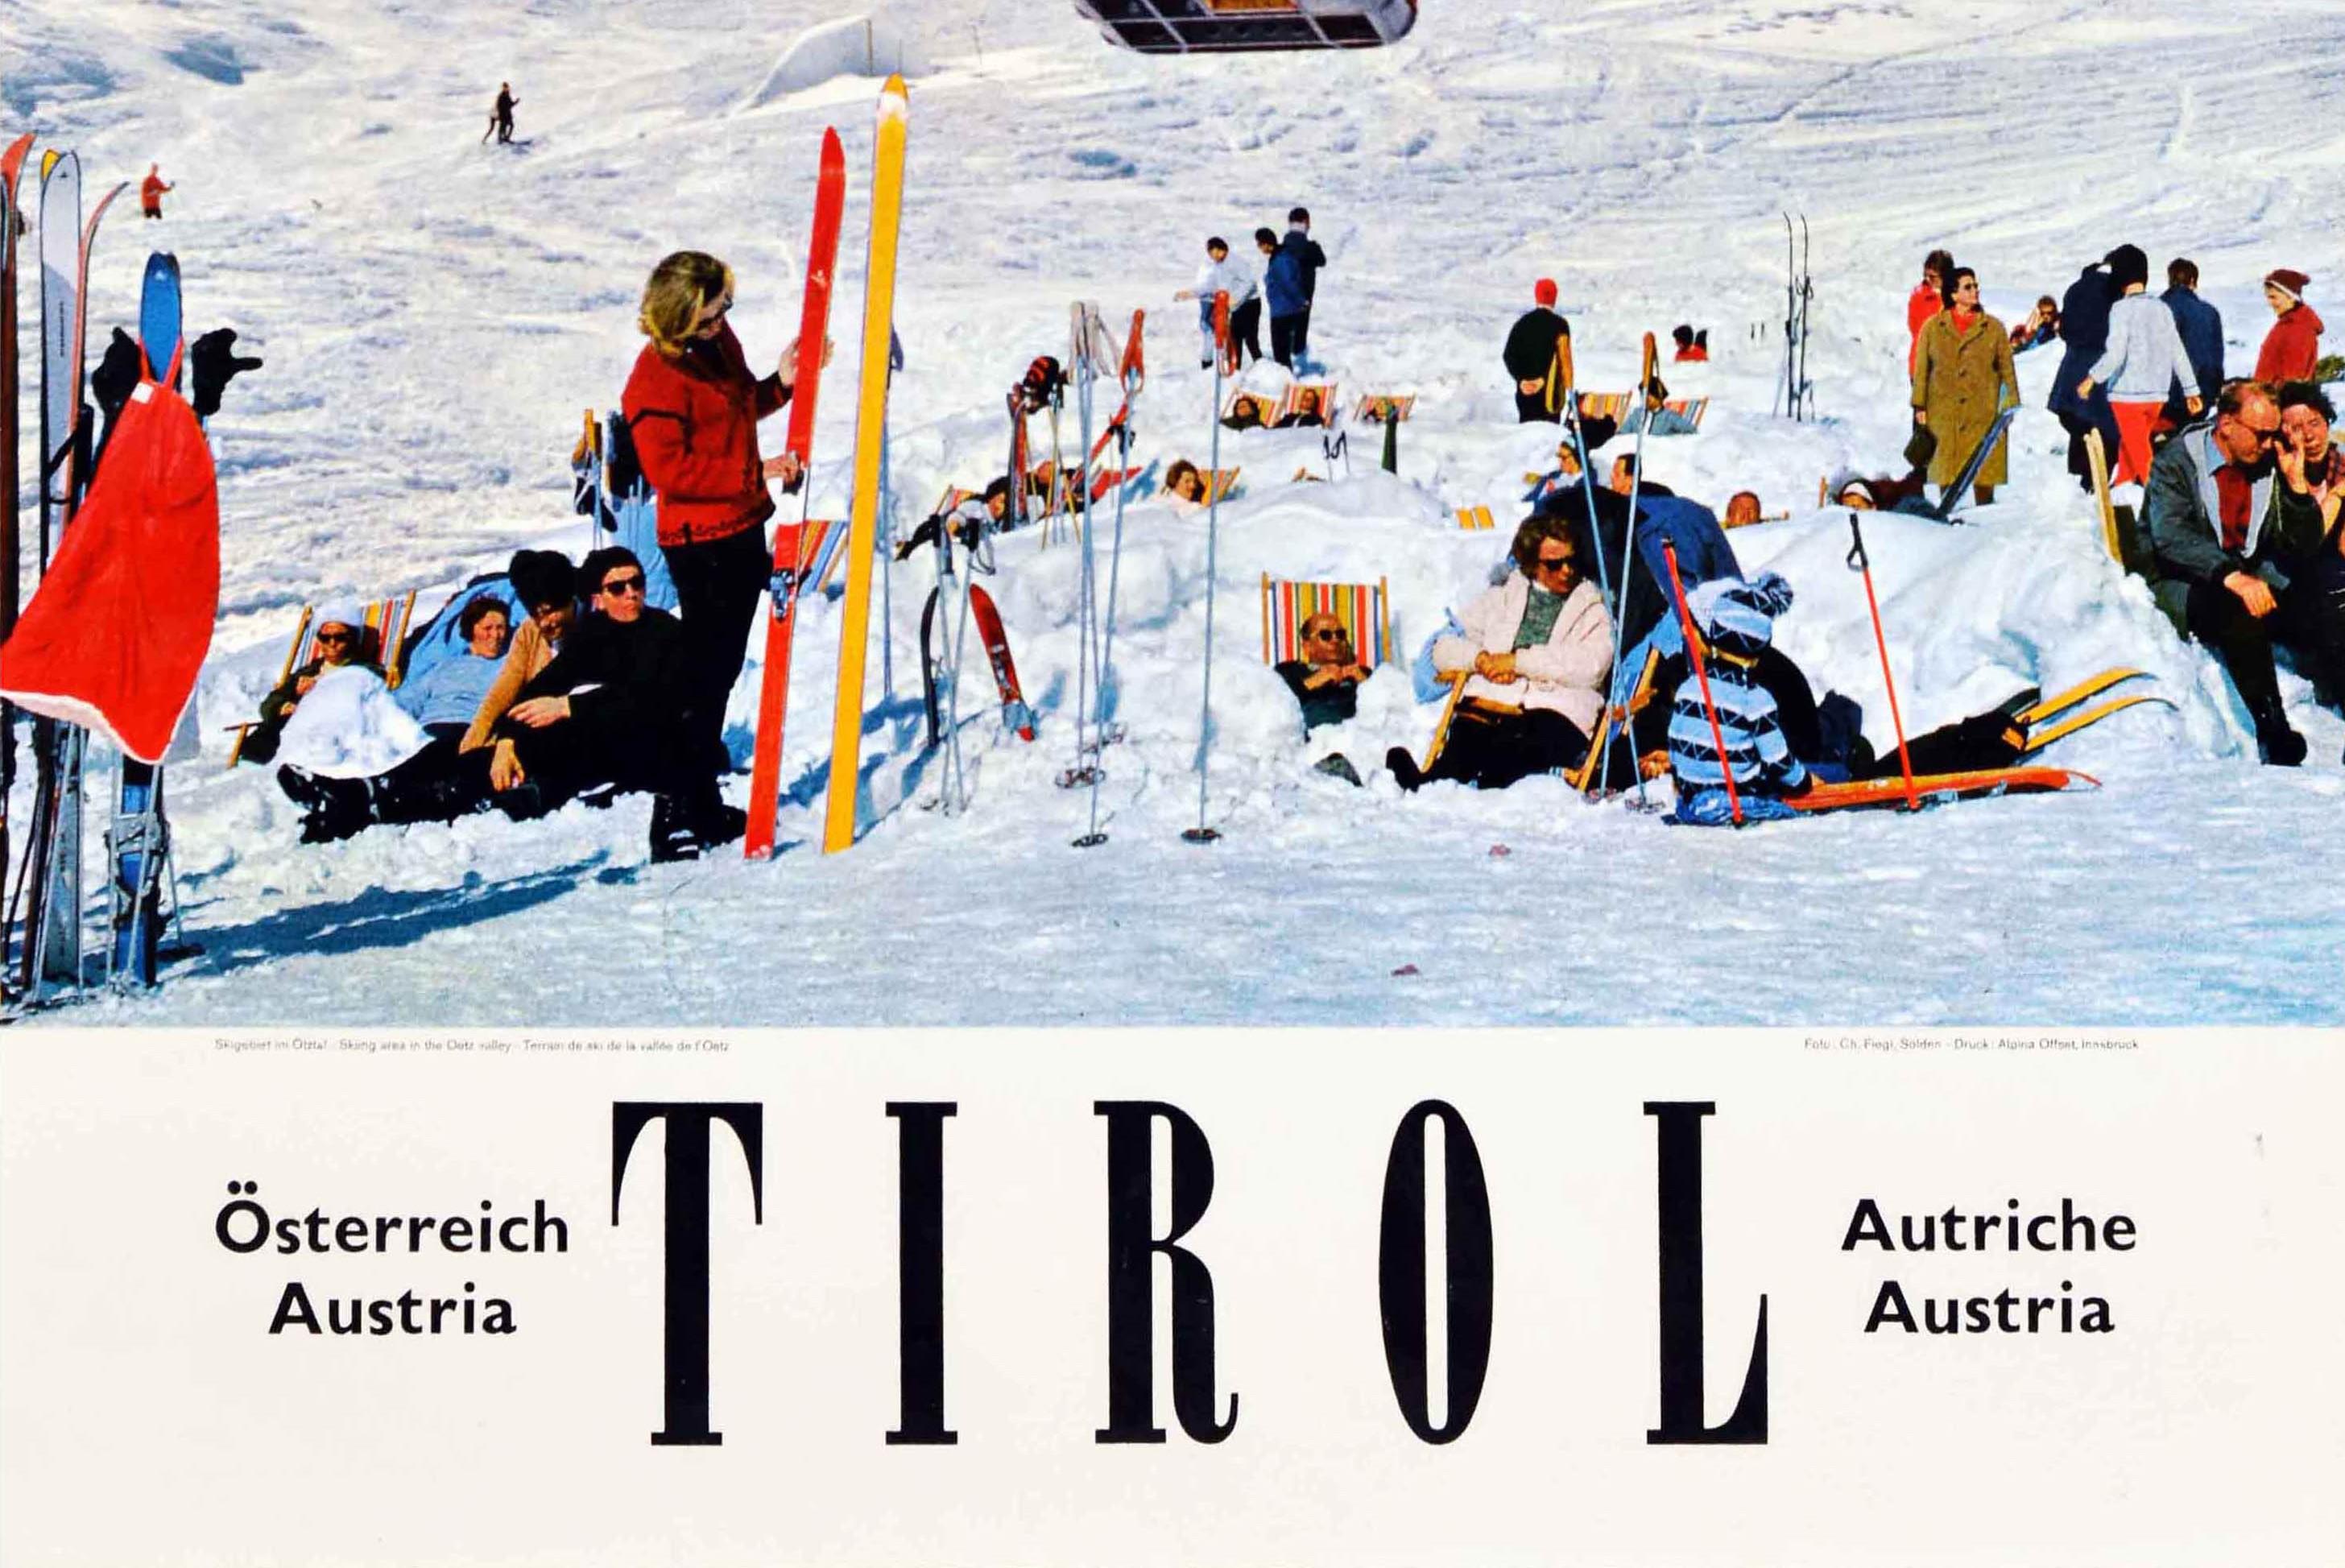 Original Vintage-Winter-Reiseplakat Tirol, Autriche, Österreich, Ski- Lift-Fotografie (Blau), Print, von Unknown